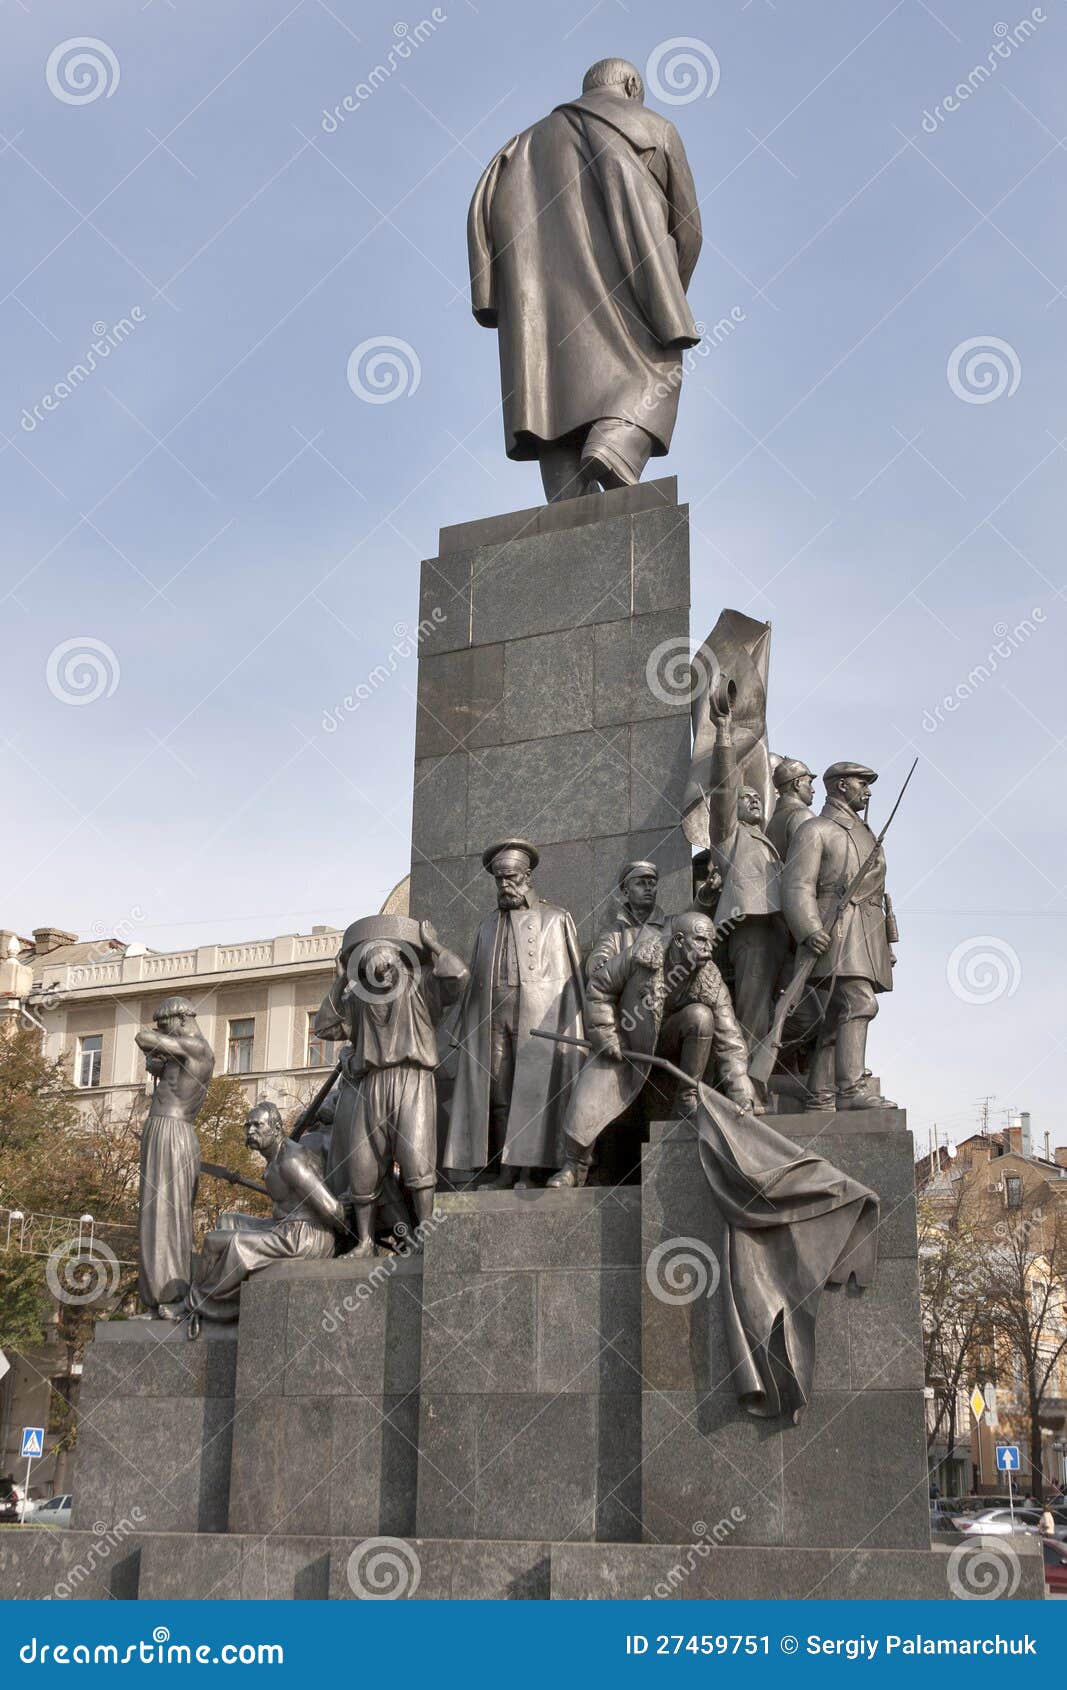 taras shevchenko monument in kharkov